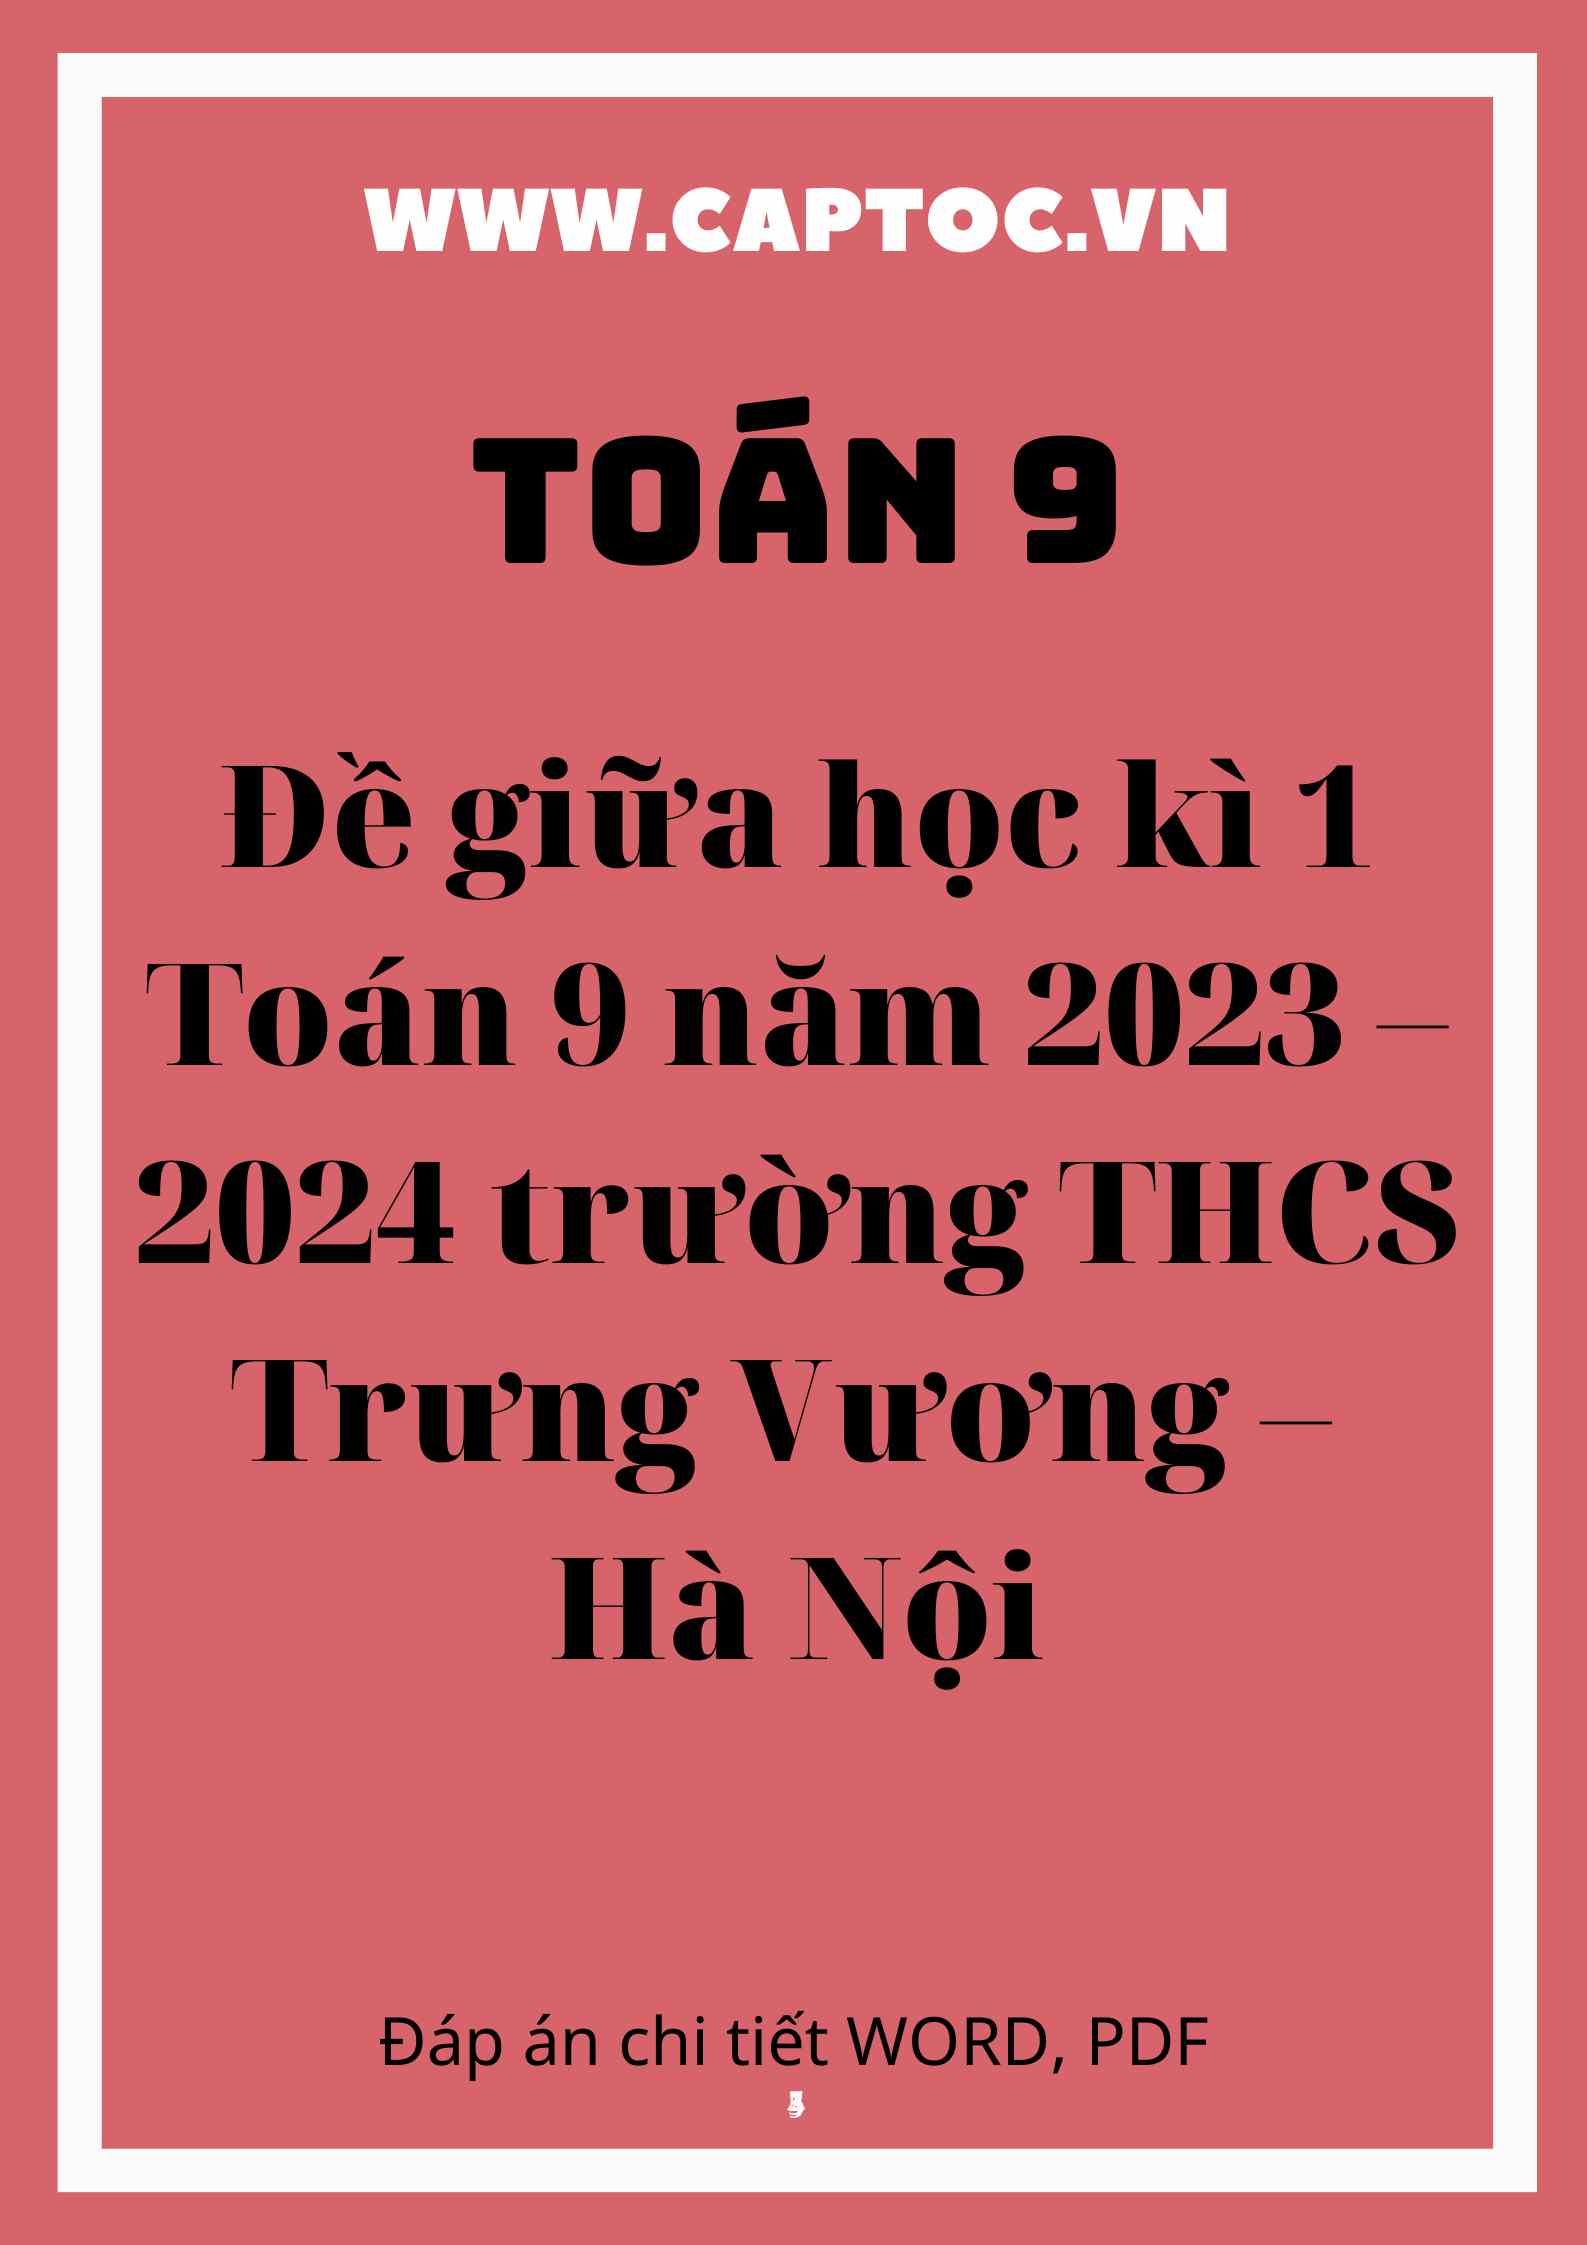 Đề giữa học kì 1 Toán 9 năm 2023 – 2024 trường THCS Trưng Vương – Hà Nội